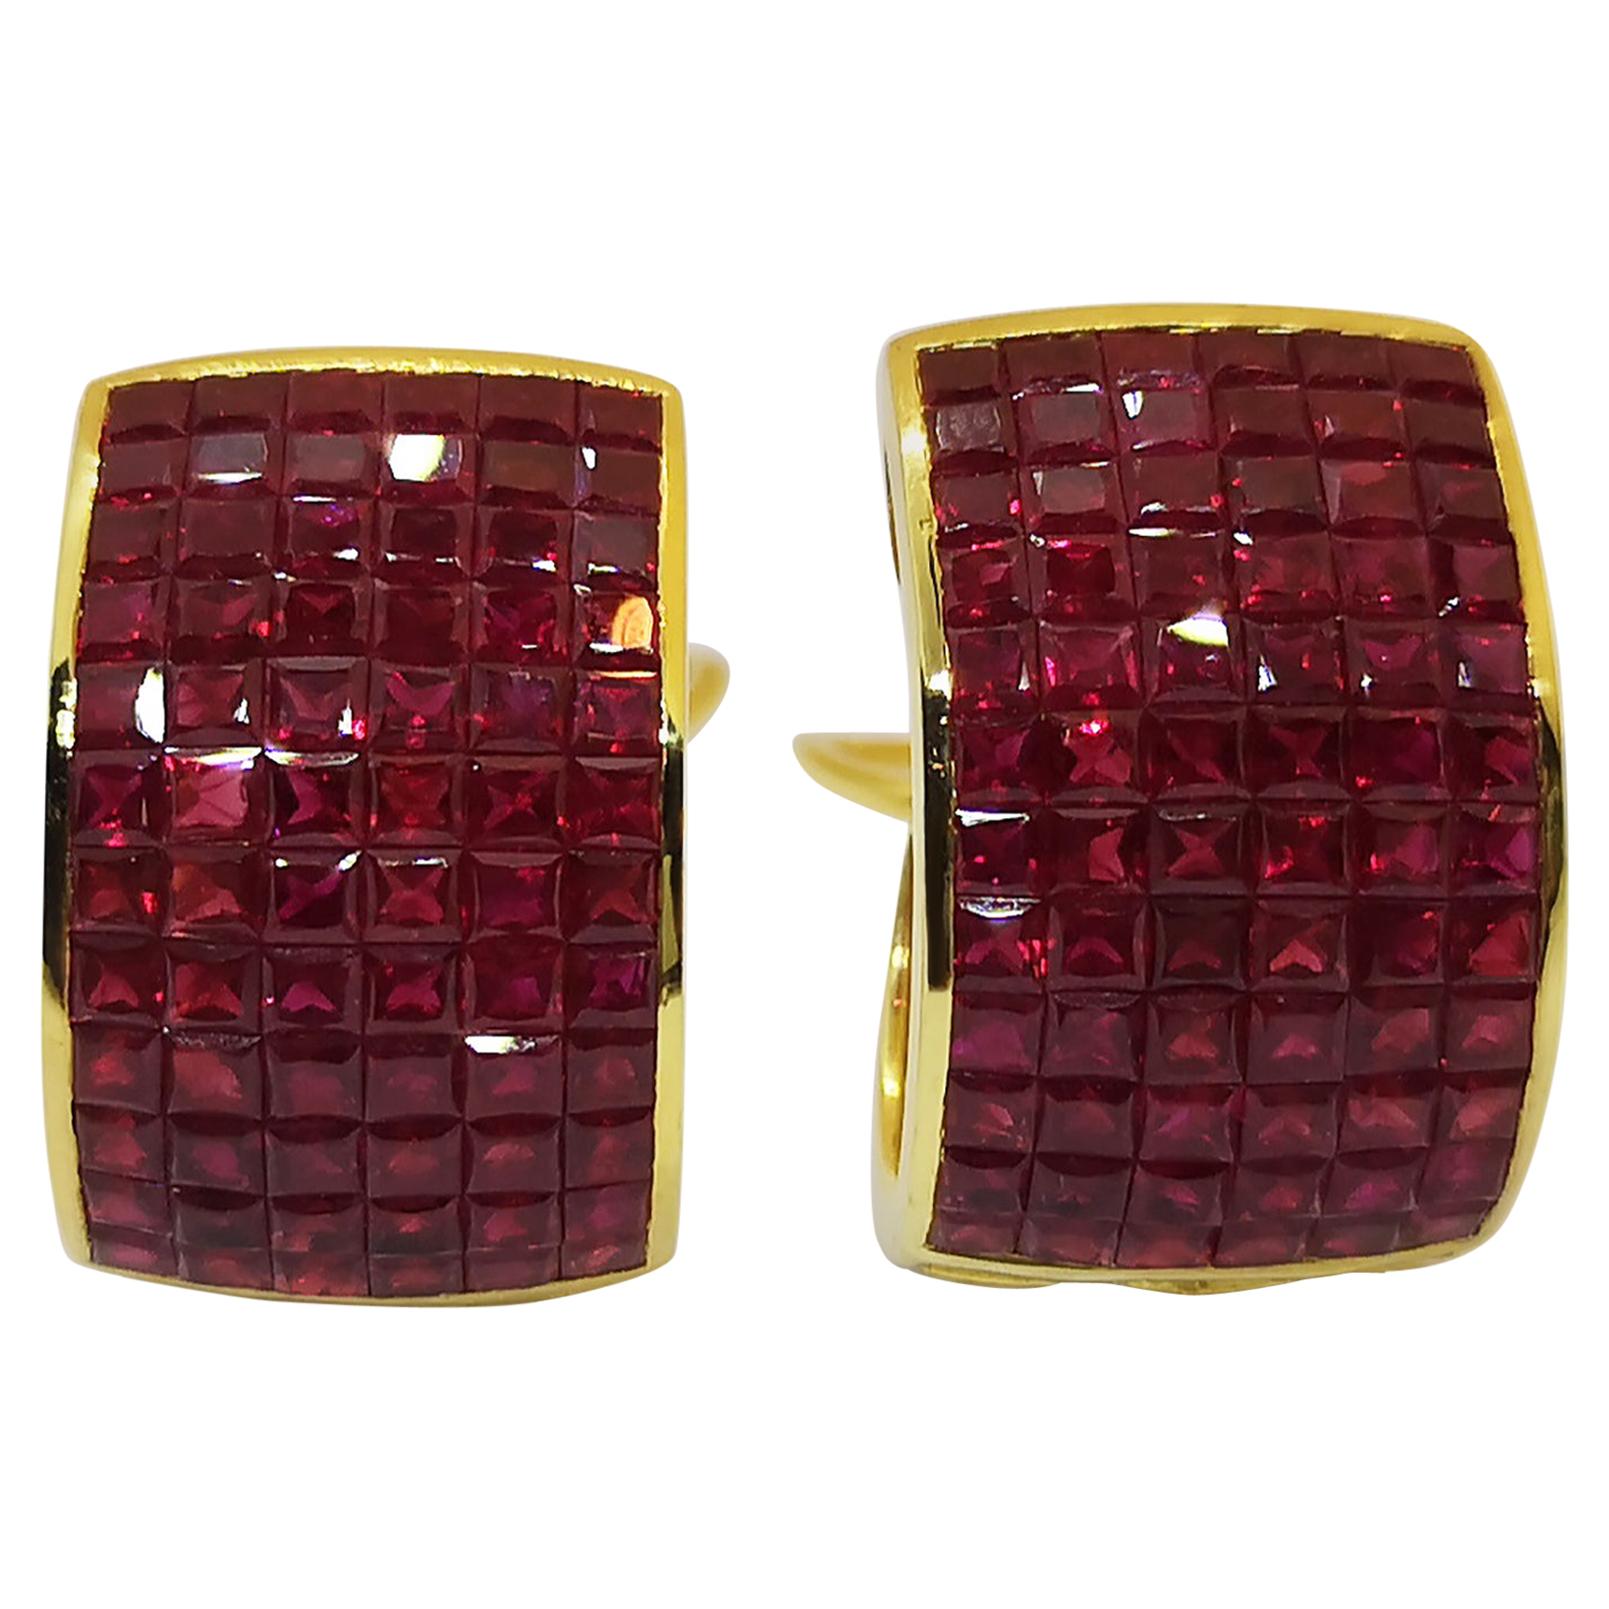 Ruby Earrings Set in 18 Karat Gold Settings